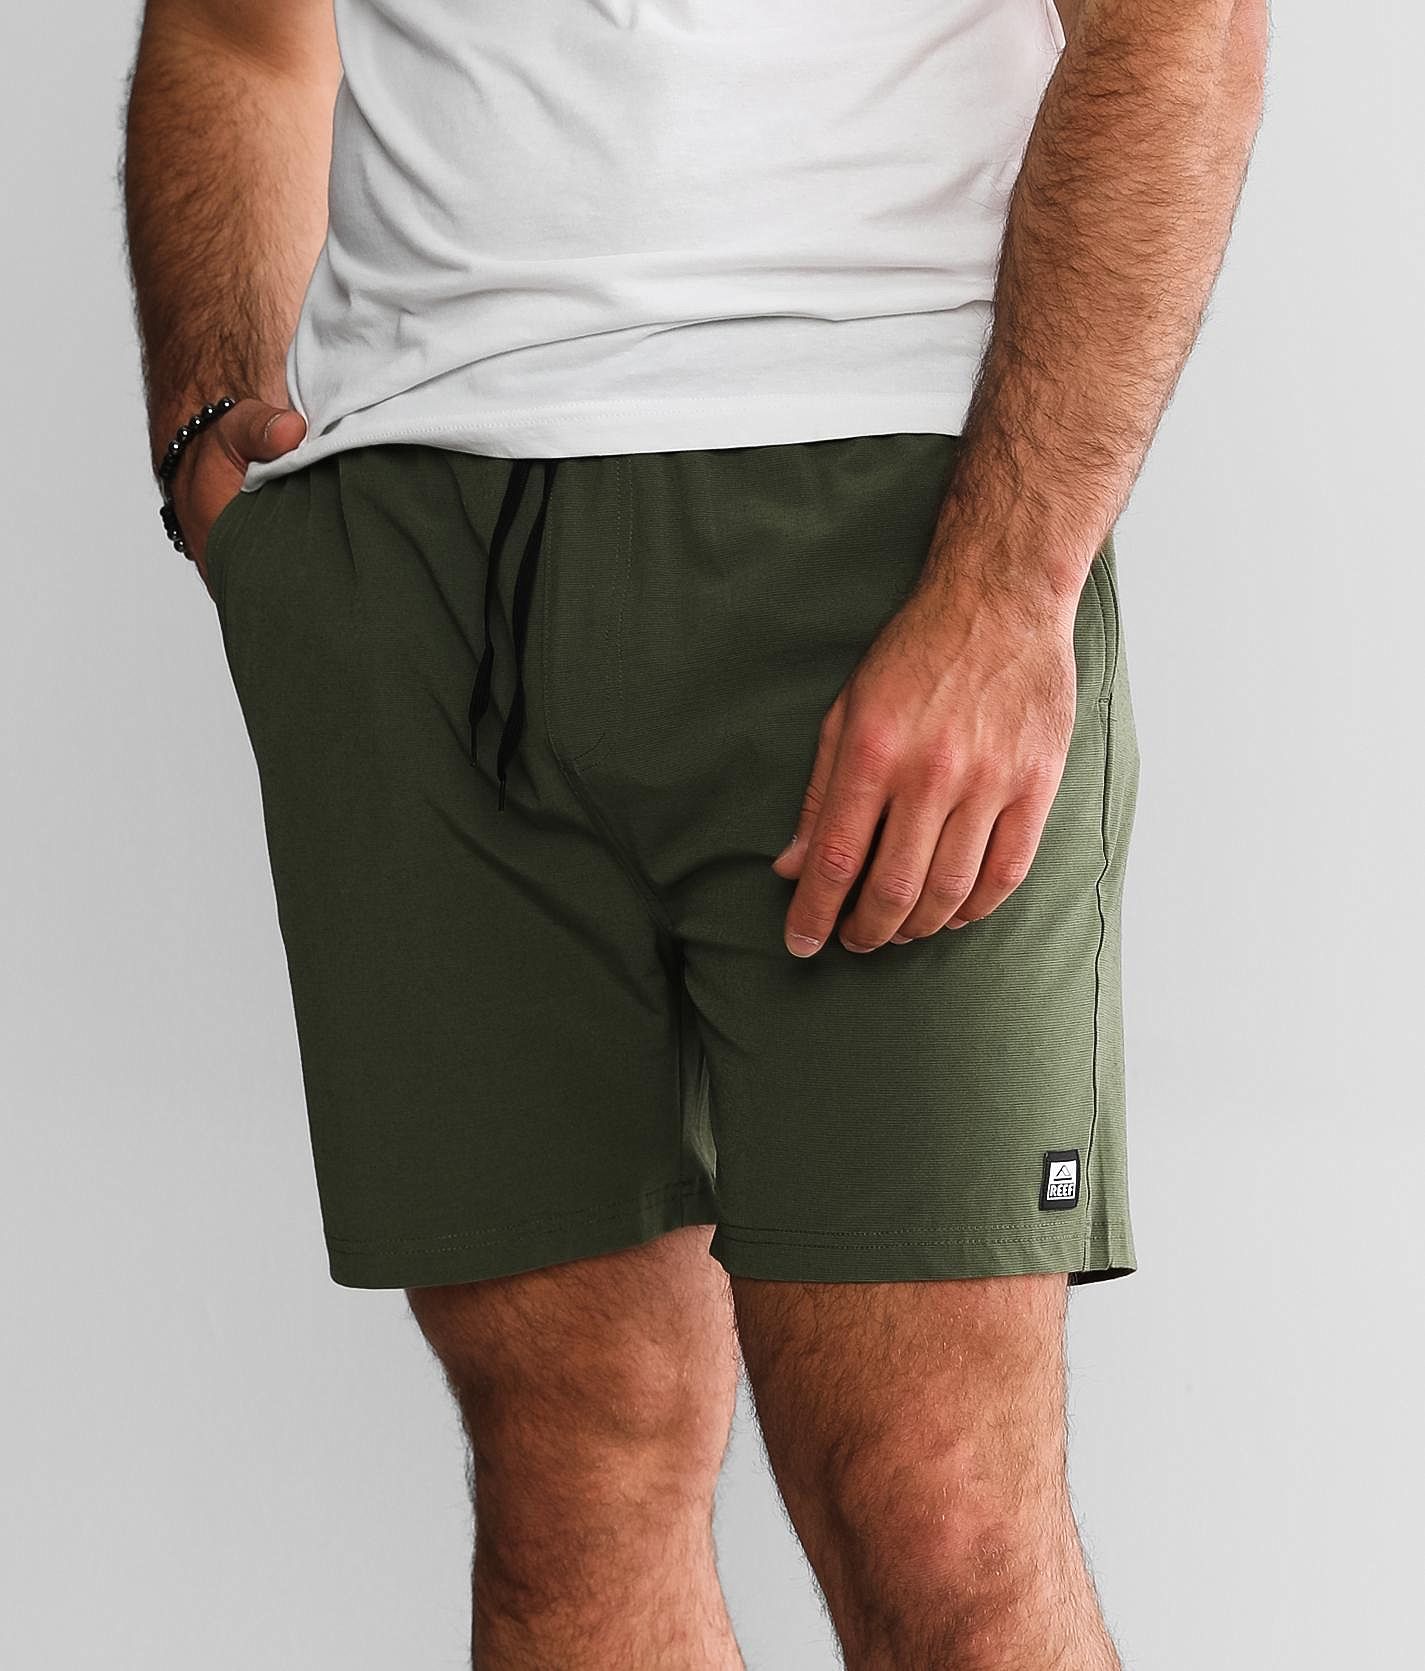 Reef Fields Walkshort - Men's Shorts in Olivine | Buckle